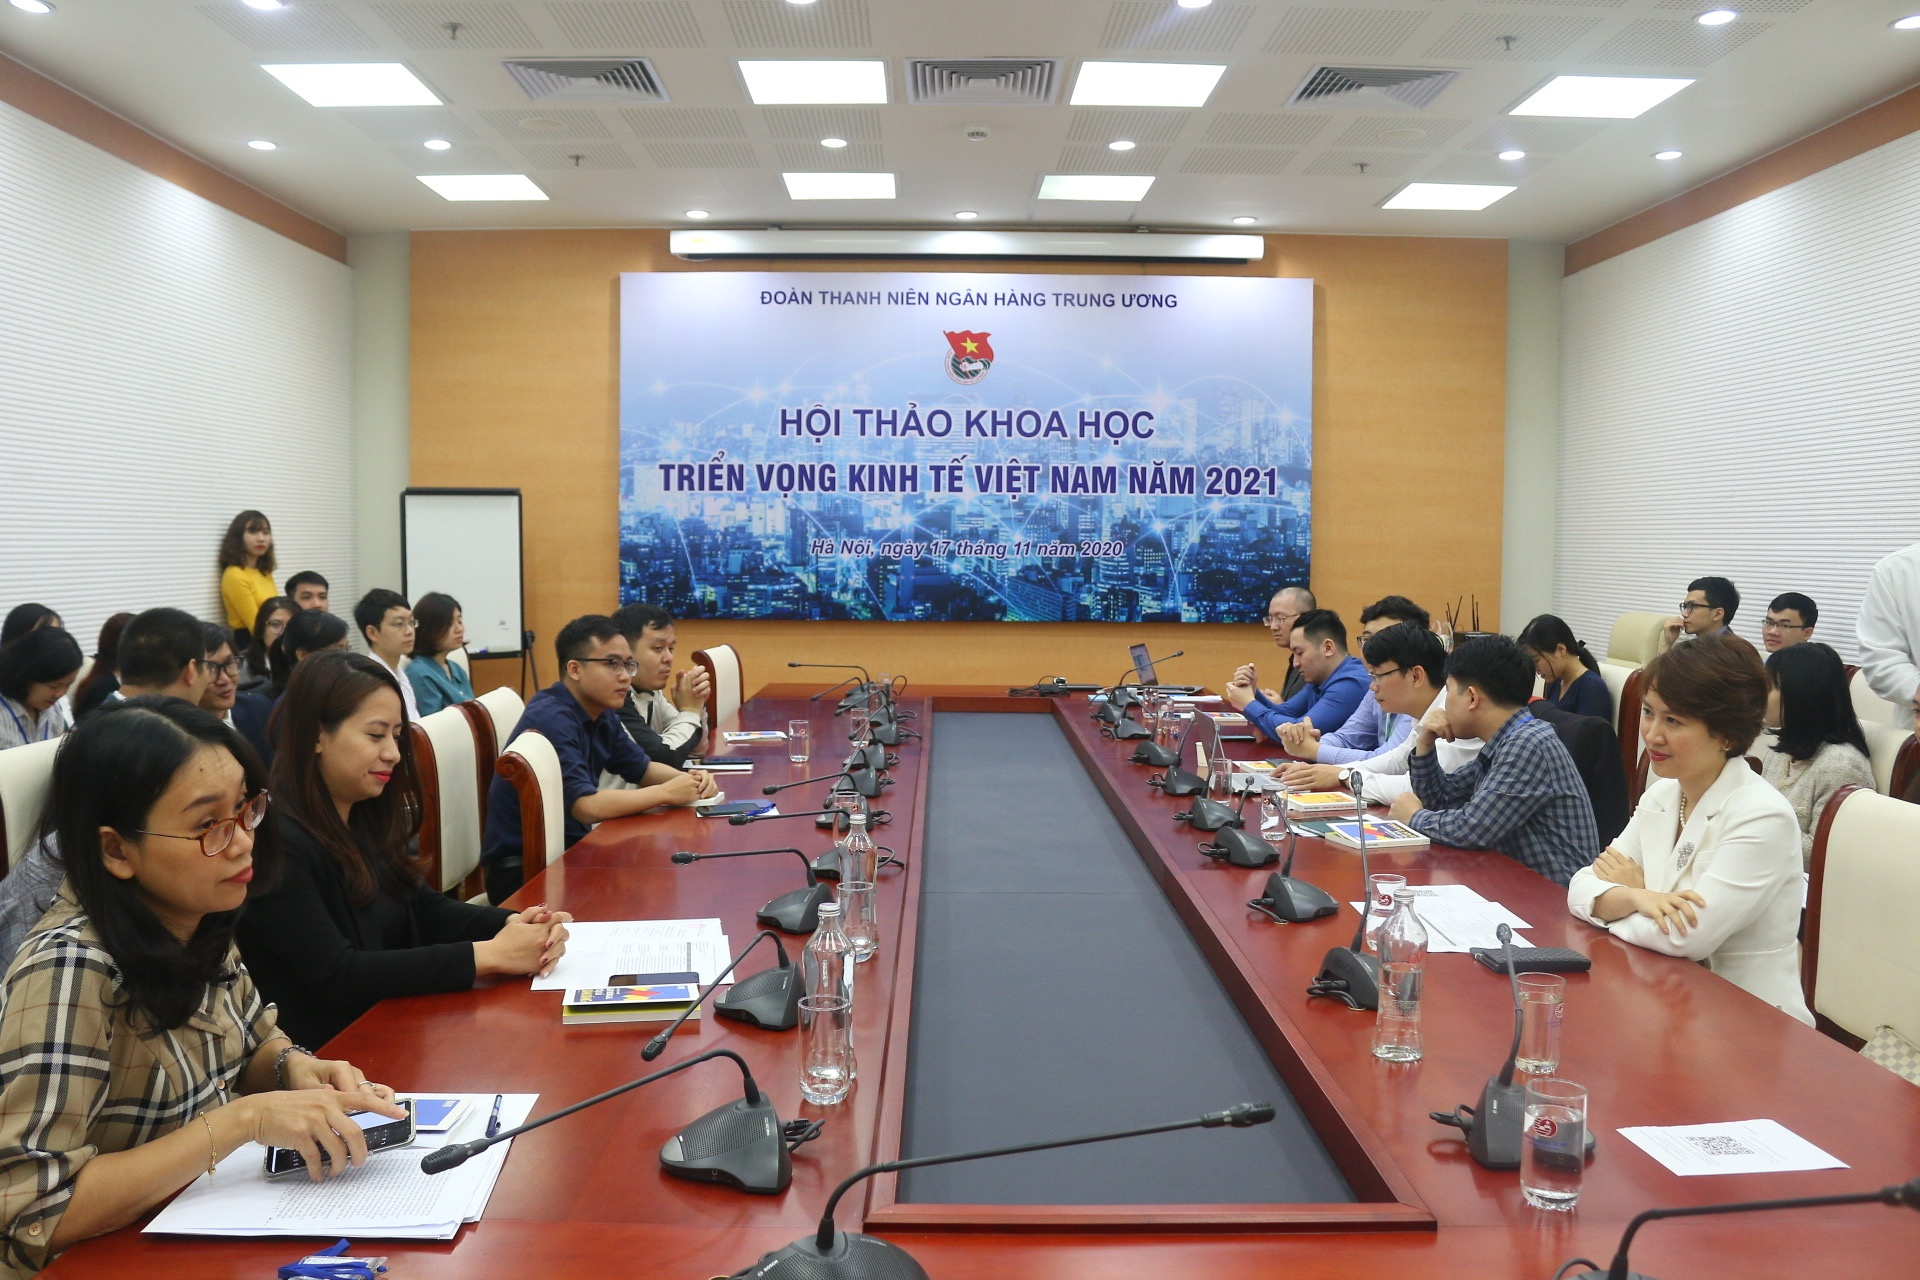 Cùng thanh niên nhìn về triển vọng kinh tế Việt Nam năm 2021